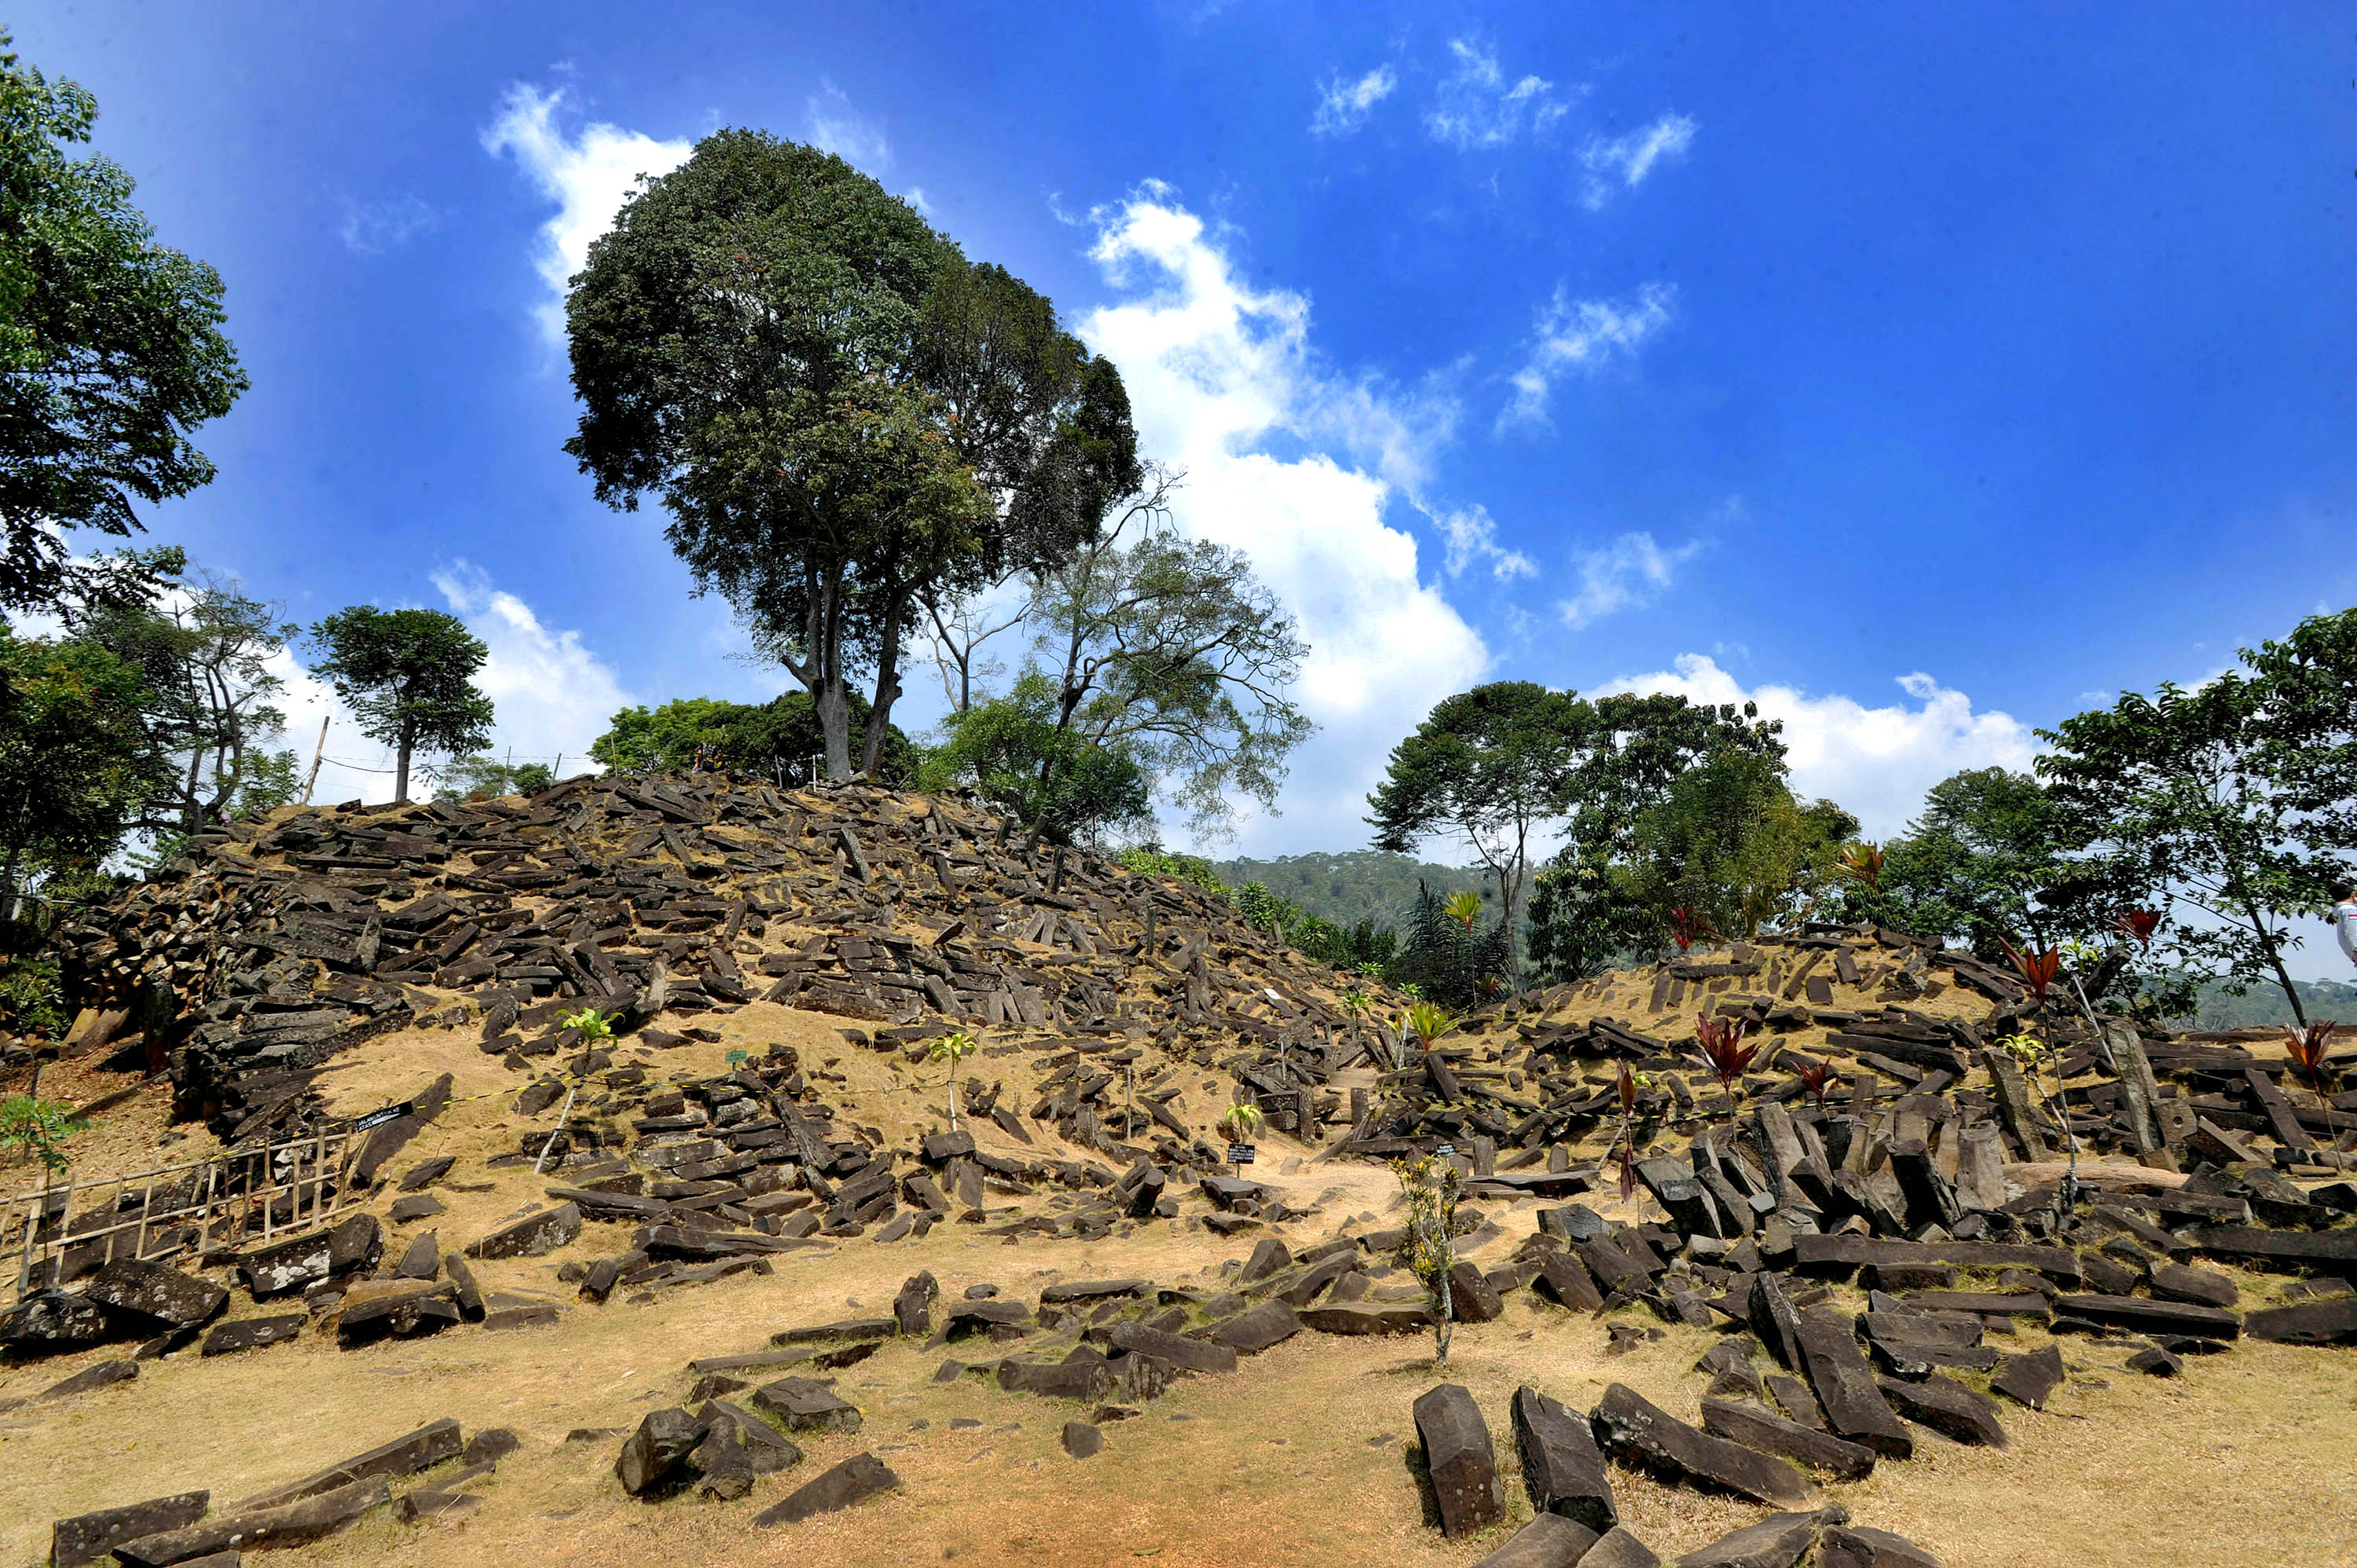 L'interprétation du site de Gunung Padang en Indonésie comme la plus ancienne pyramide au monde est hautement controversée. © Arie Basuki, Wikimedia Commons, CC by-sa 4.0